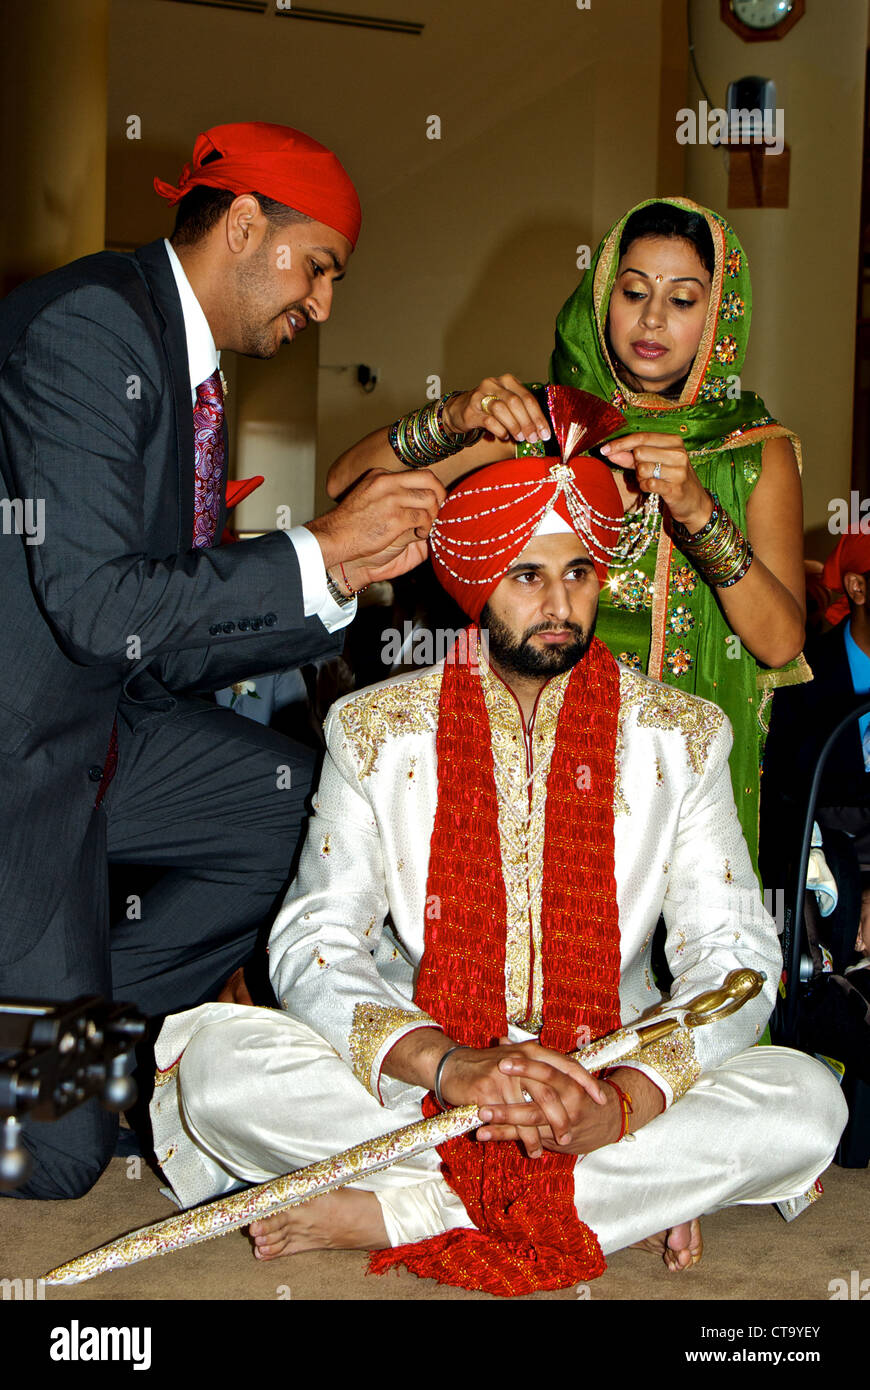 Traditionelle indische Hochzeit Bräutigam Familienmitglieder entfernen spezielle Pre-Zeremonie Perlen Kopfschmuck Dekorationen entfernt Stockfoto